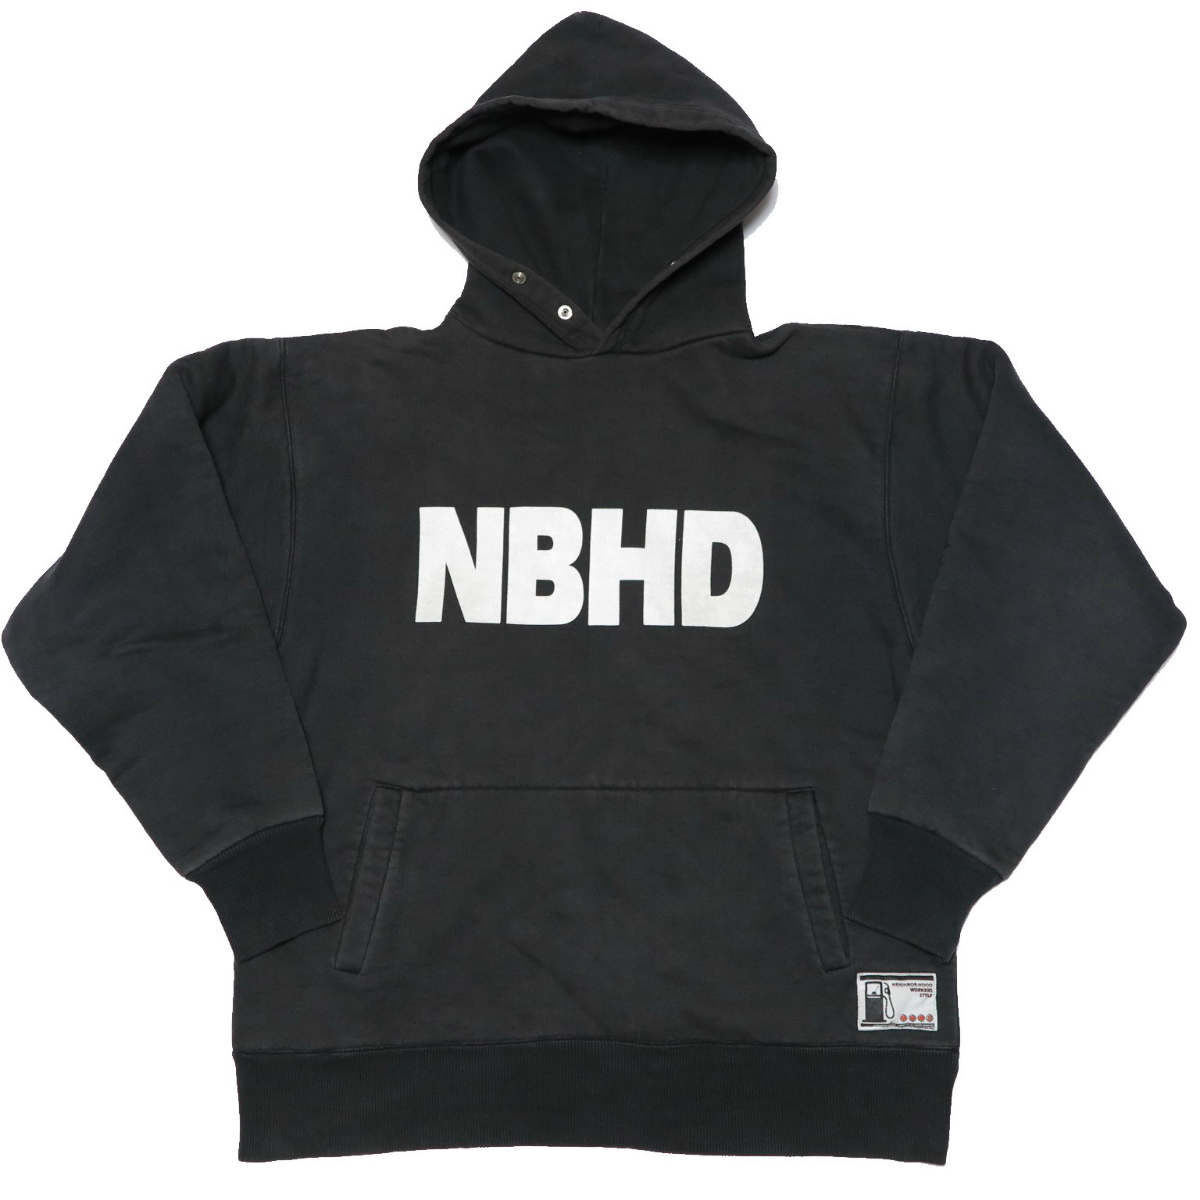 NEIGHBORHOOD × CAMBER ネイバーフッド キャンバー NBHD パーカー L 黒 black ブラック フーディ 24OZ 24オンス ダブルフェイス USA製